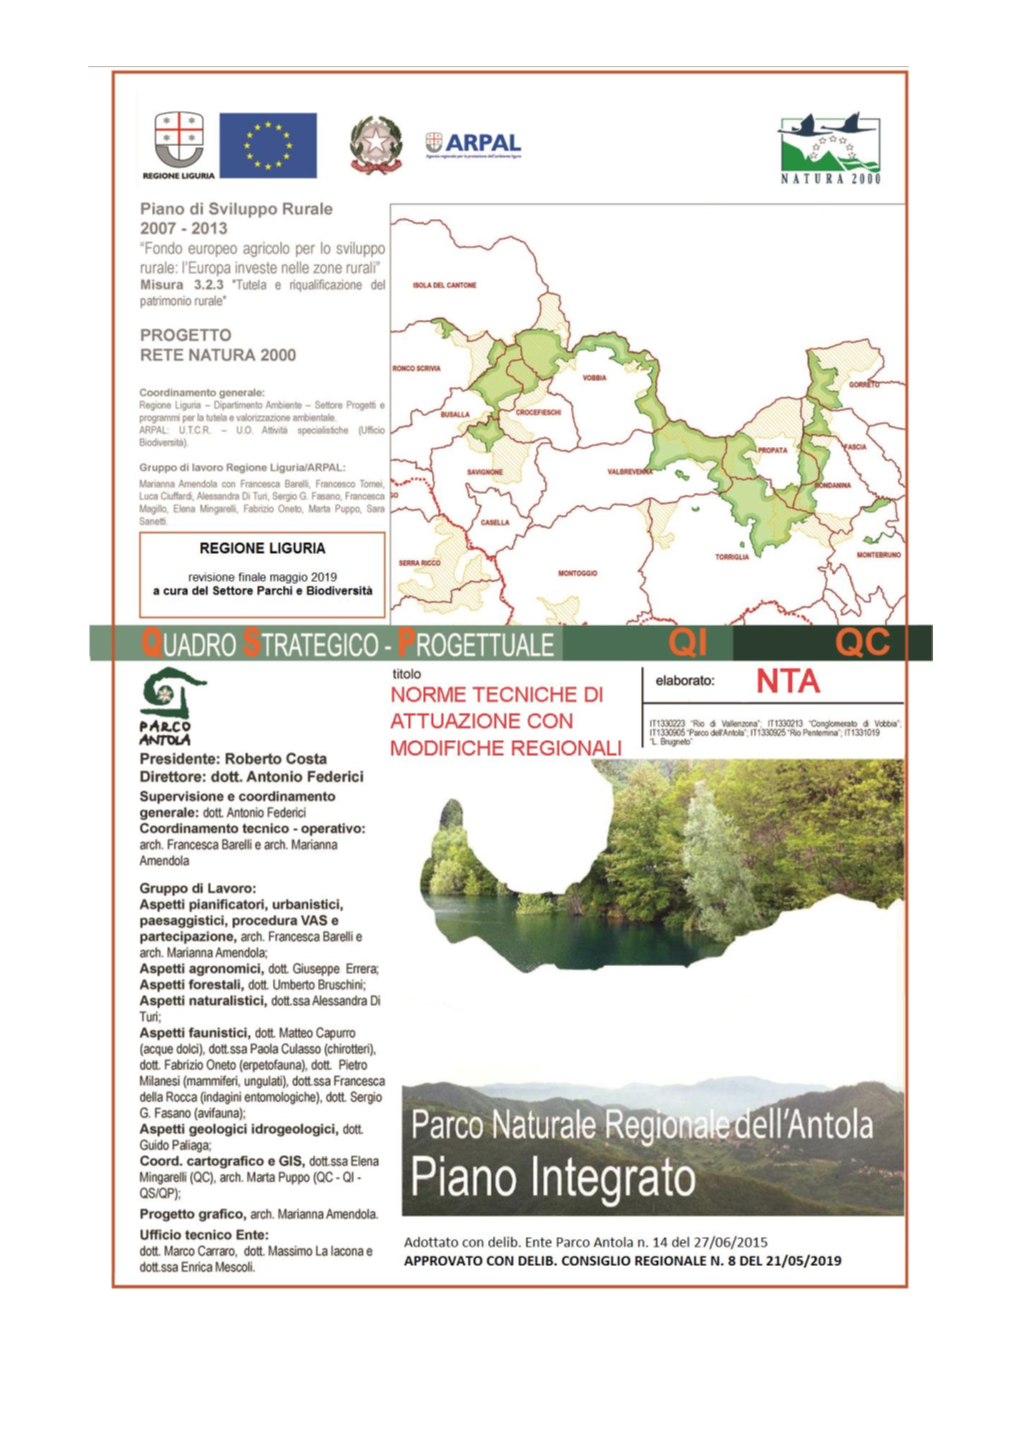 Parco Naturale Regionale Del Parco Dell'antola – Piano Integrato